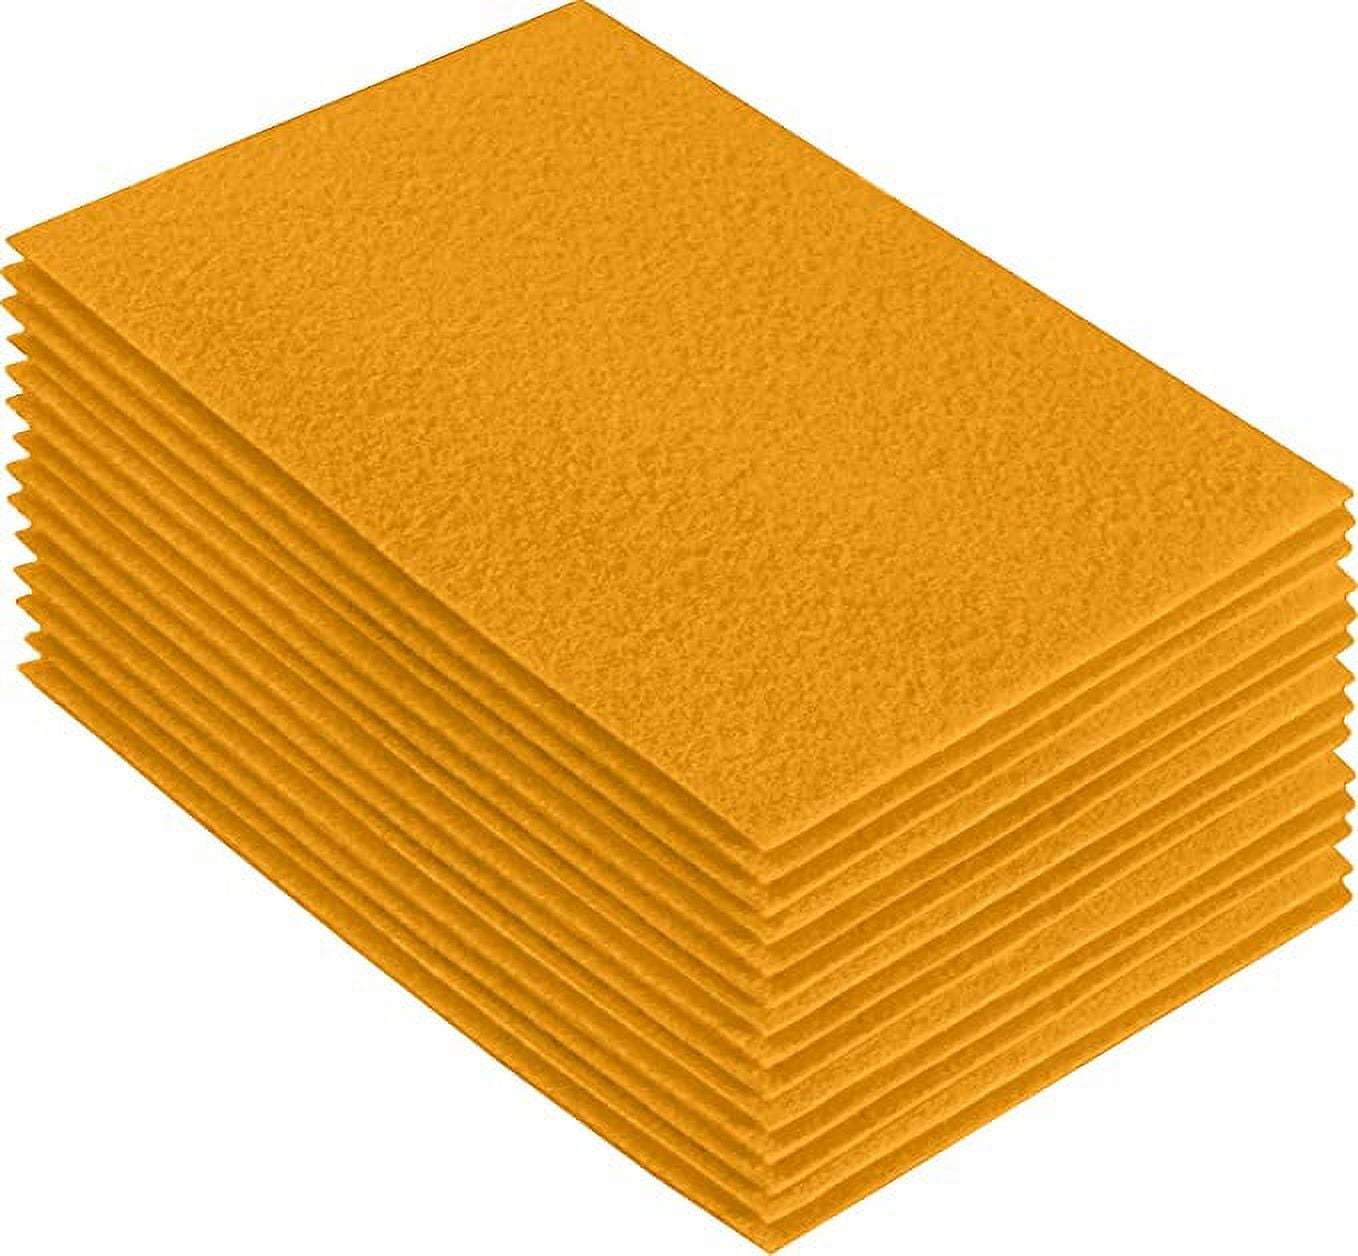 Kunin 9 x 12 Orange Felt Sheet, 24 Count